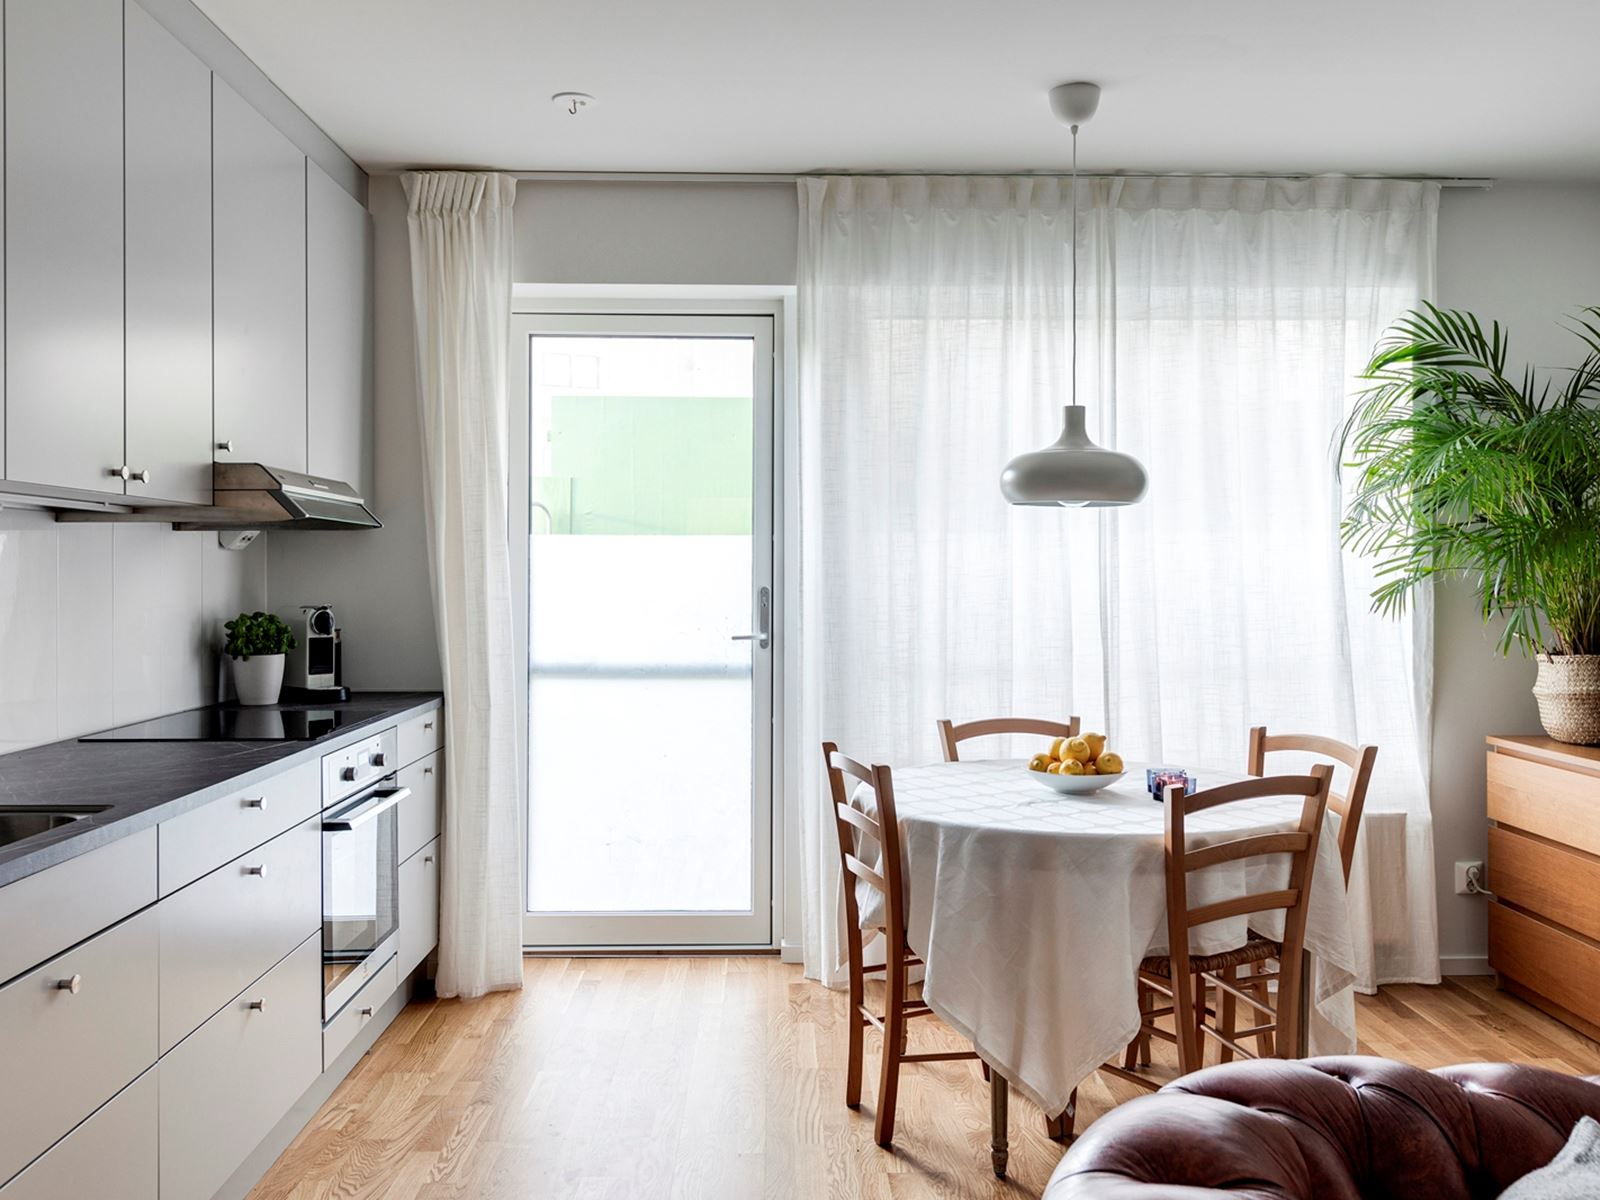 Se en 3D visualisering av lägenheten med inredningsförslag via länken nedan: https://bit.ly/3ifahdU. Stora Varvsgatan 39 - Bjurfors